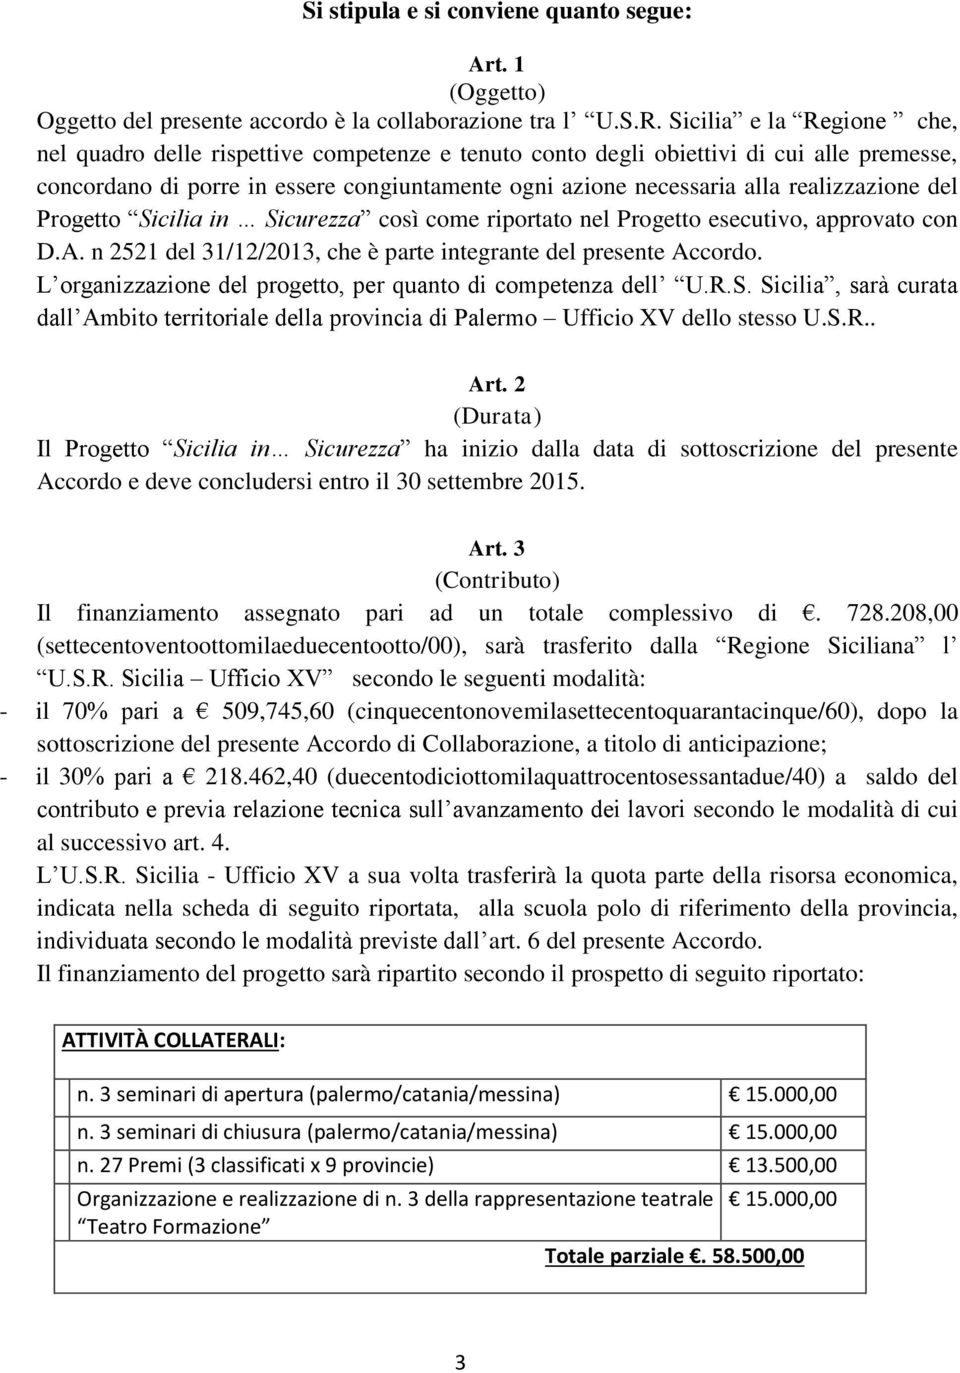 realizzazione del Progetto Sicilia in Sicurezza così come riportato nel Progetto esecutivo, approvato con D.A. n 2521 del 31/12/2013, che è parte integrante del presente Accordo.